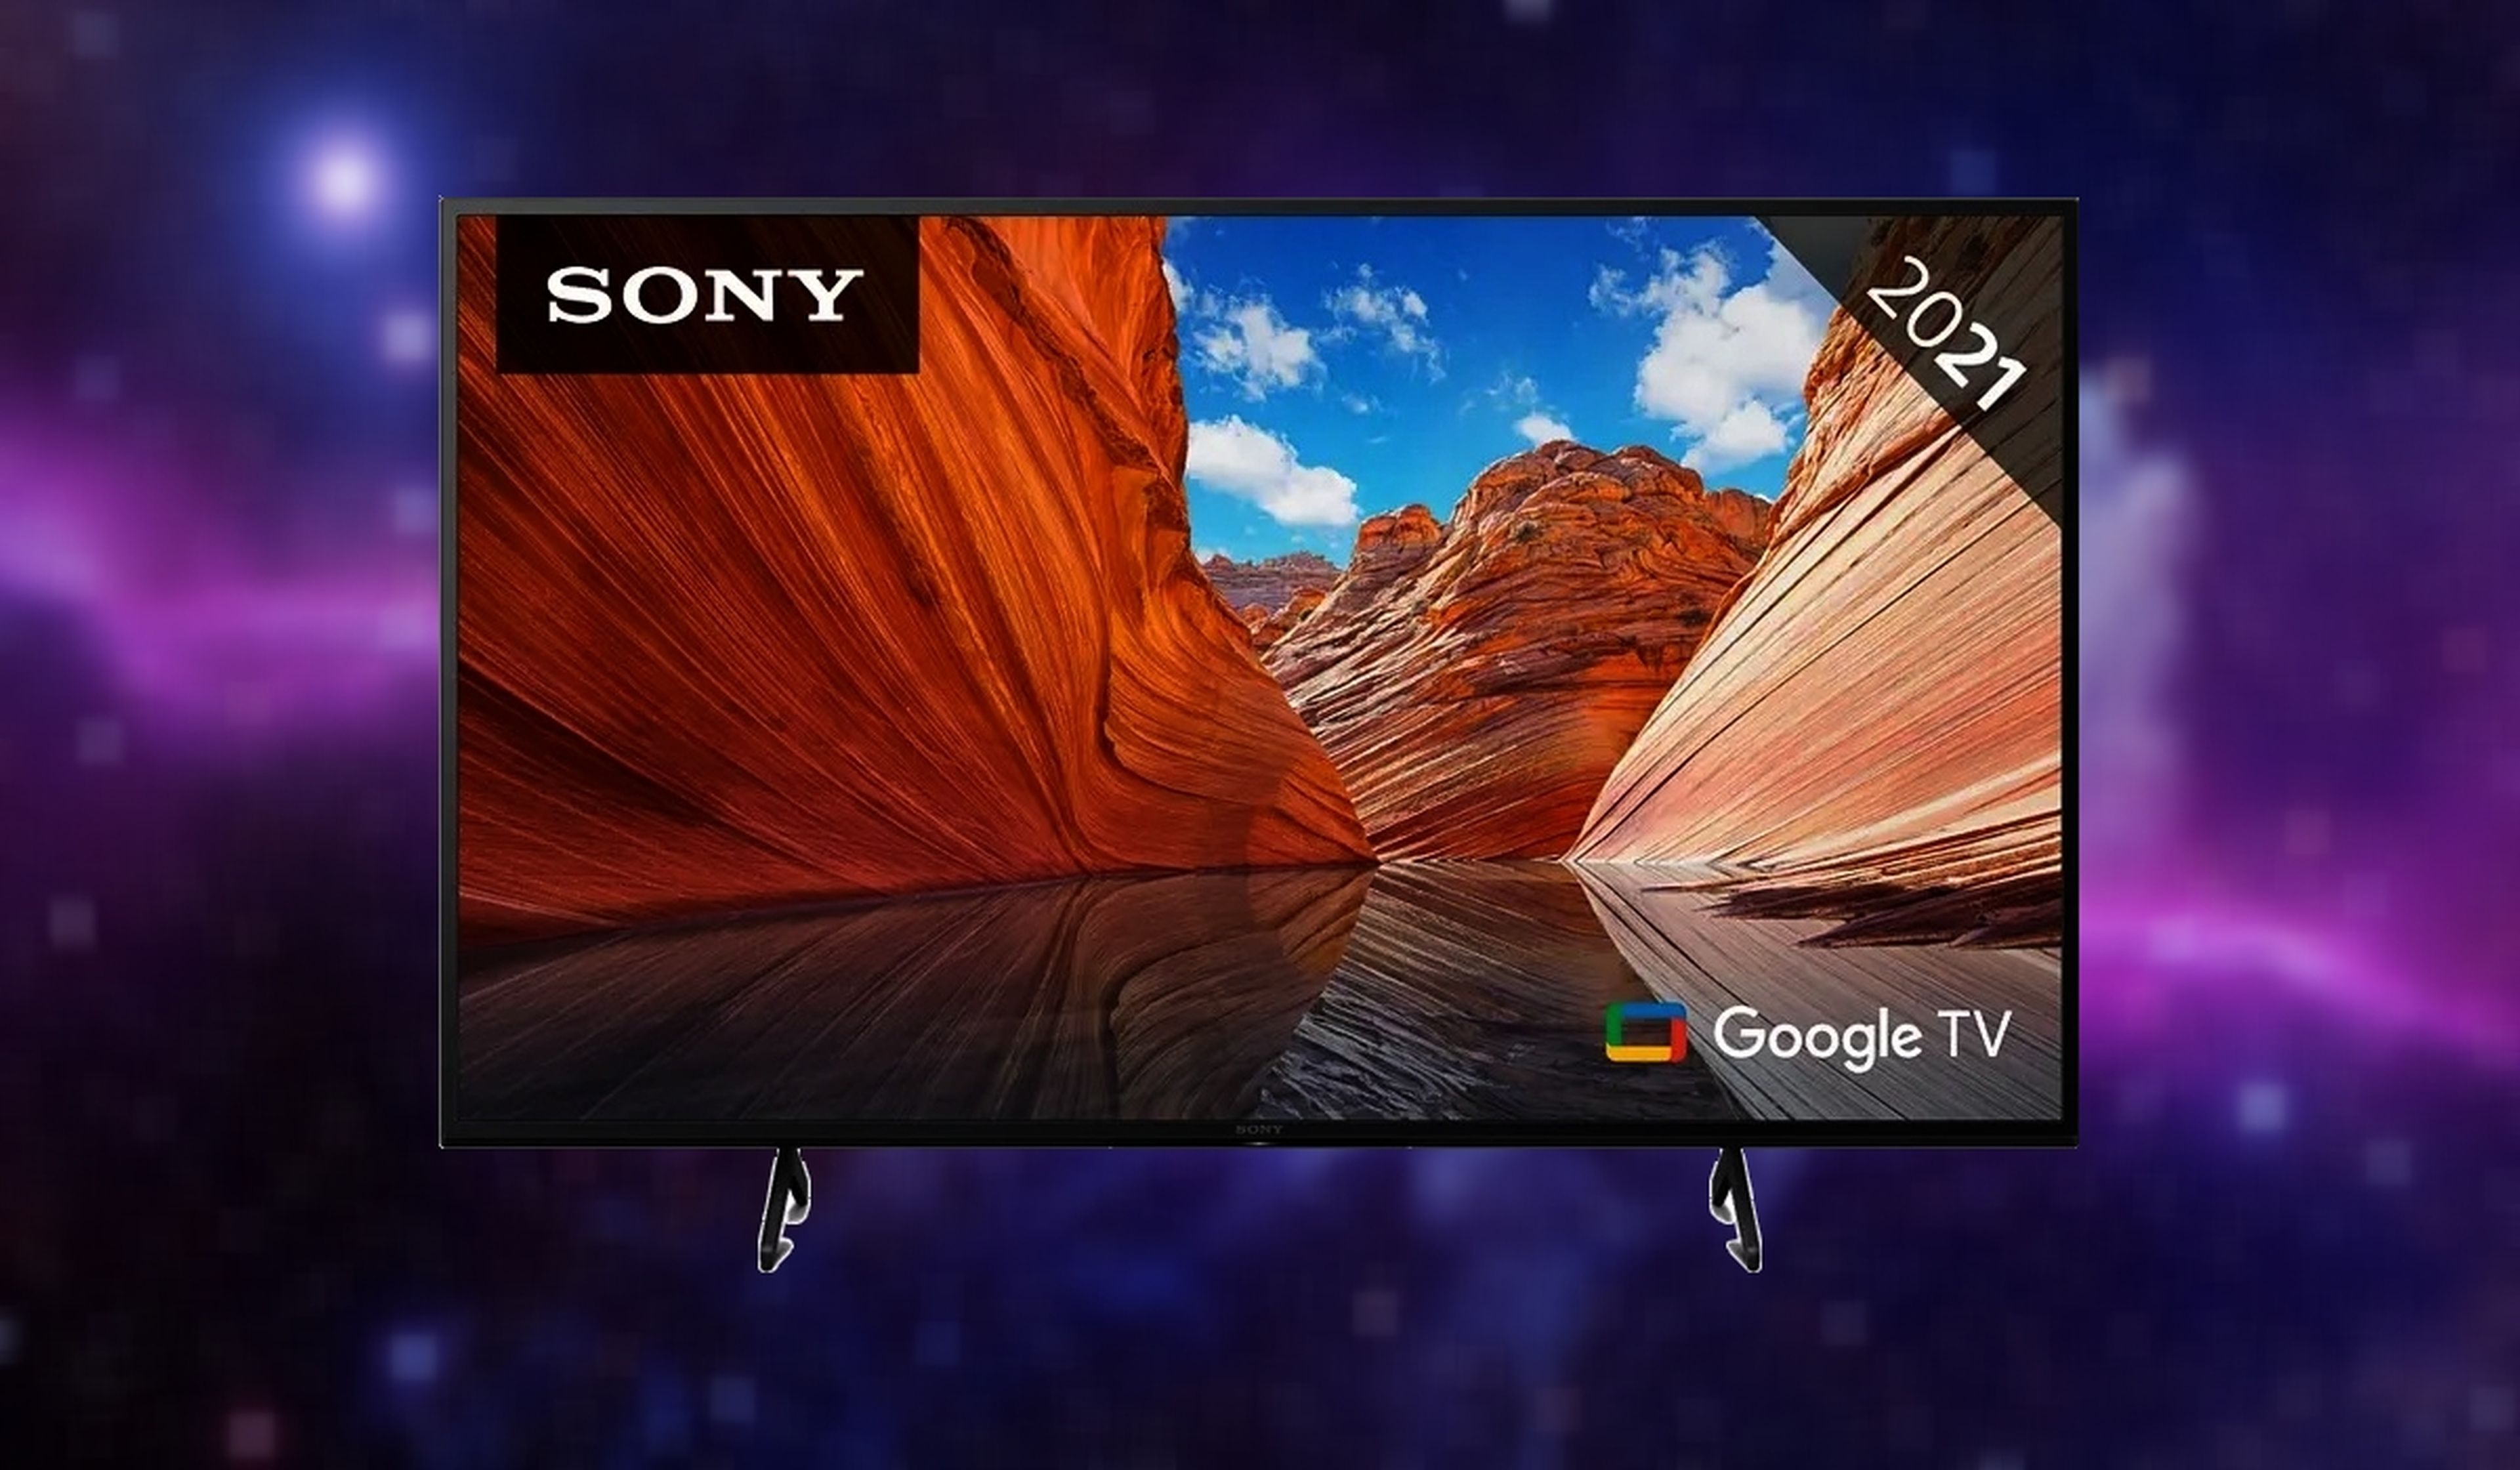 Esto es una rareza: un televisor 4K de Sony de 50 pulgadas que baja de los 720 euros....¡y con Google TV!